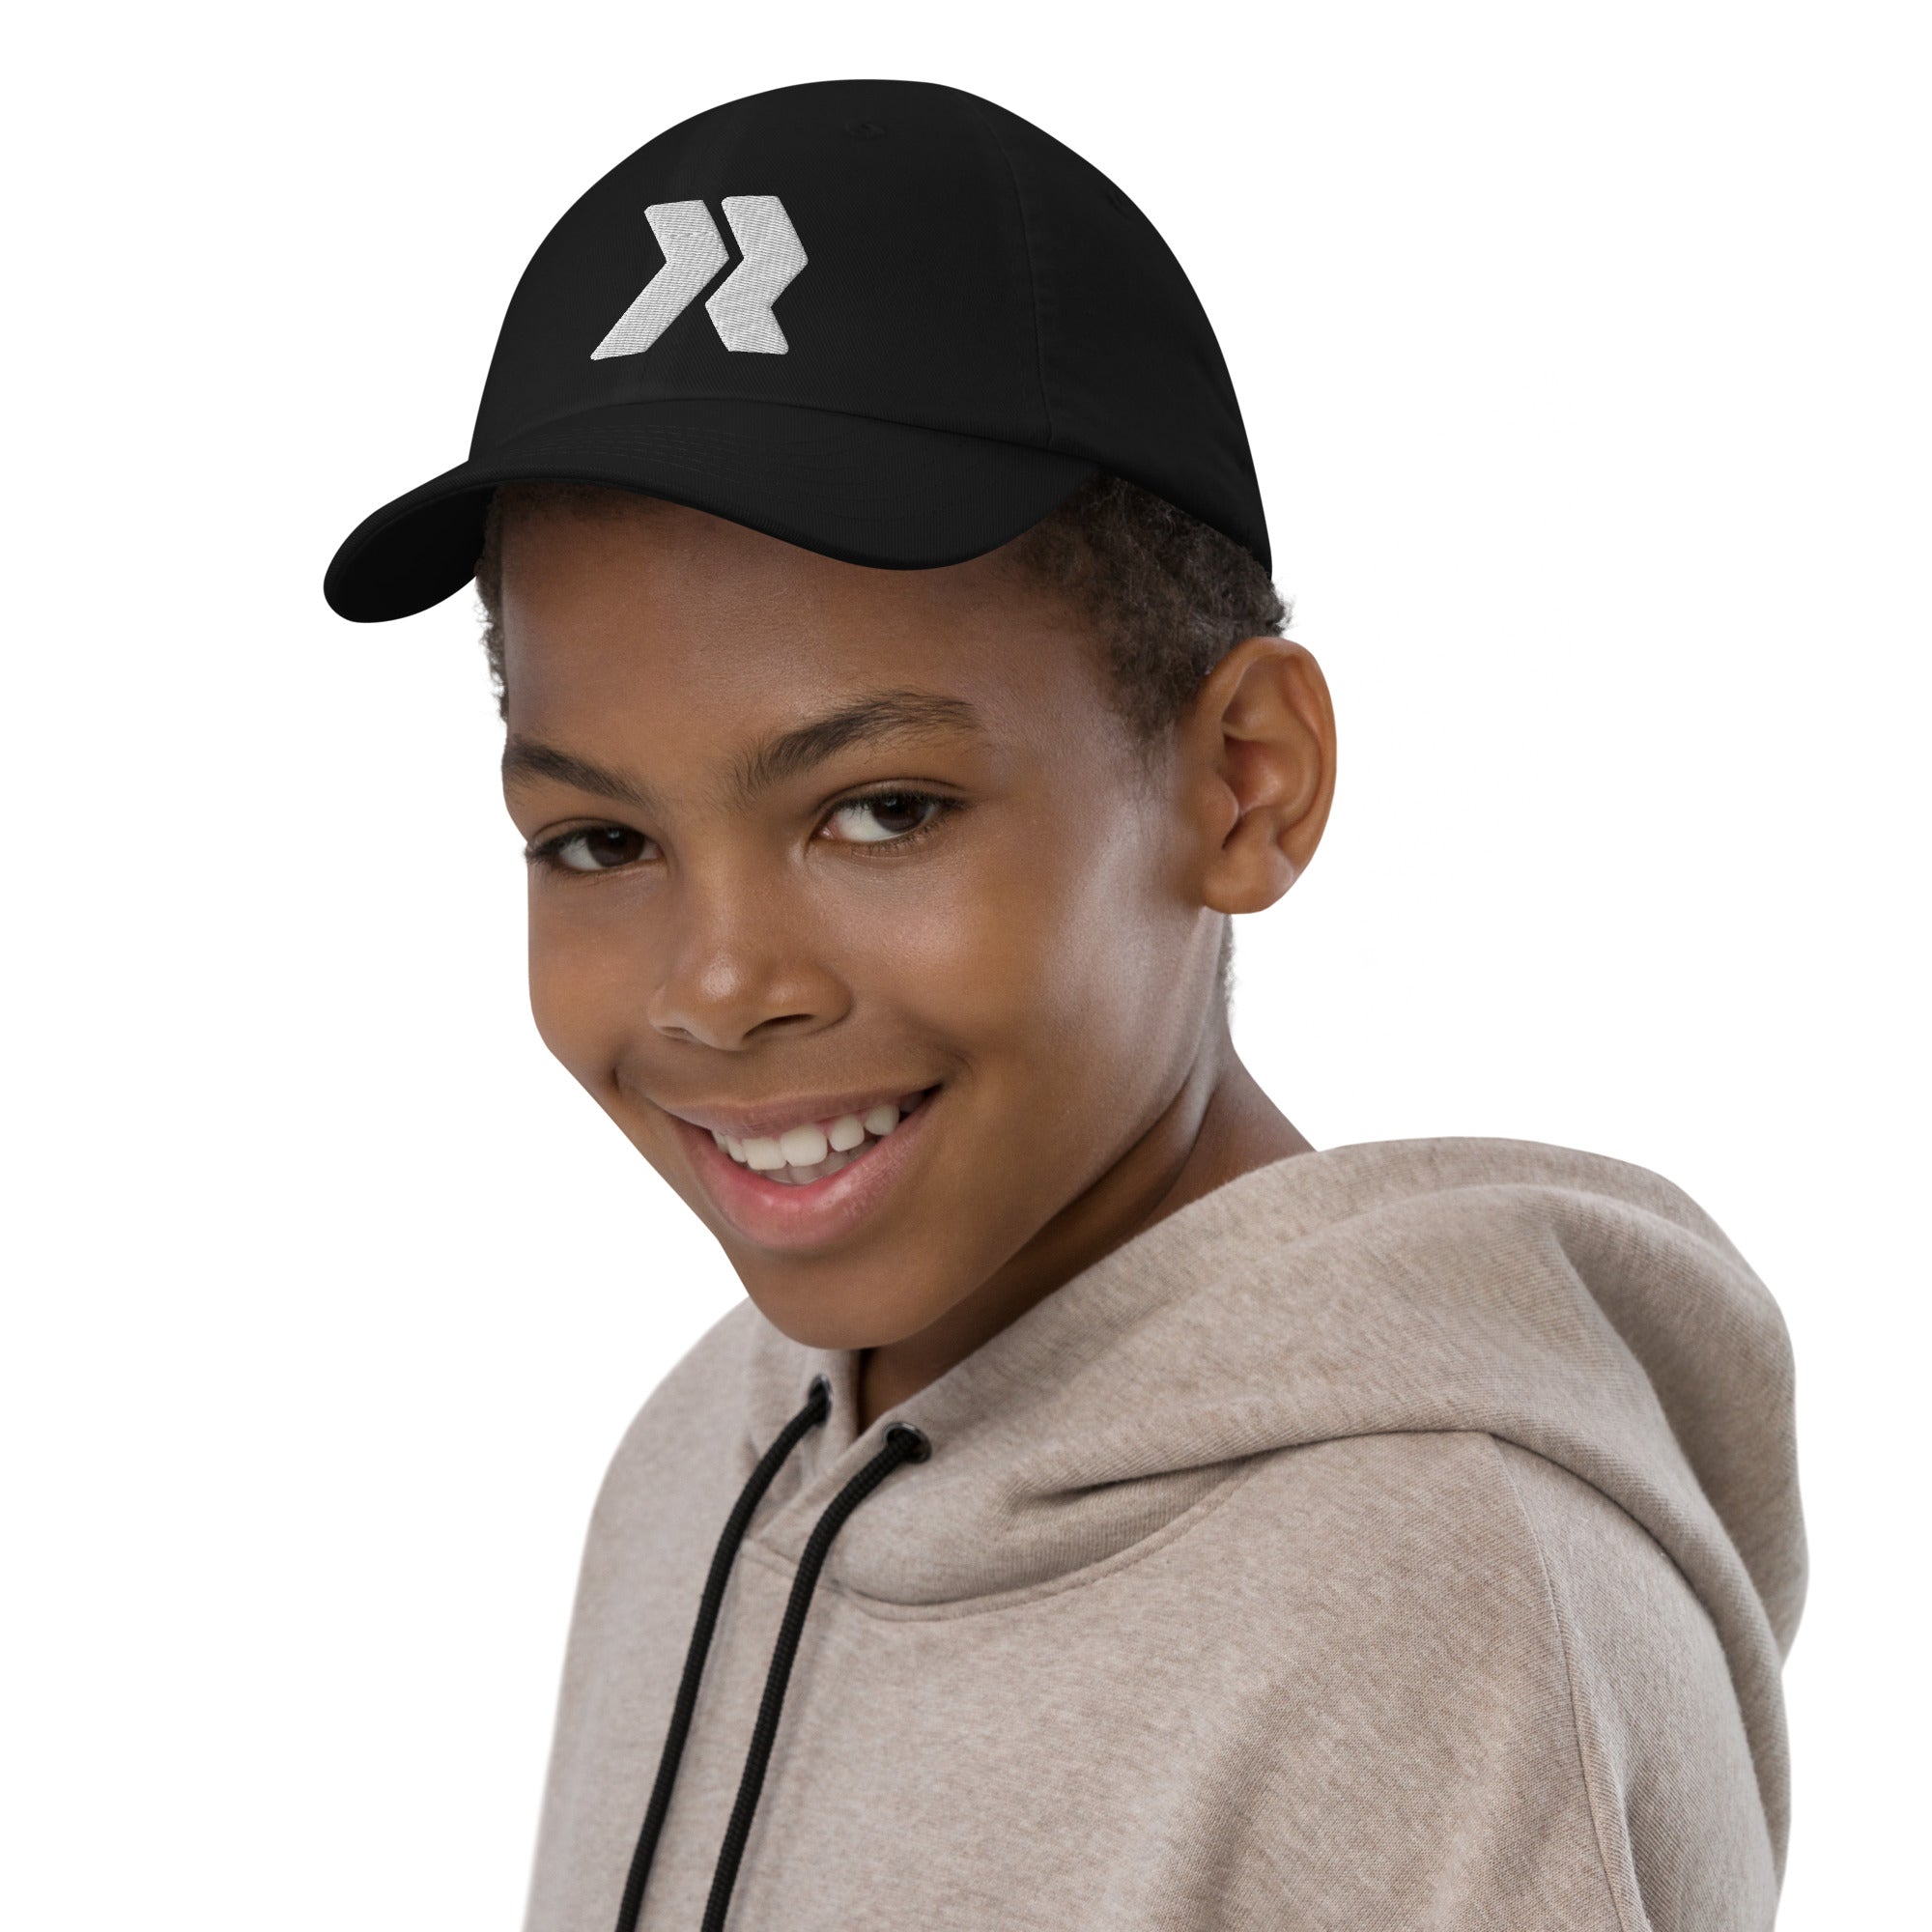 Redline Youth baseball cap